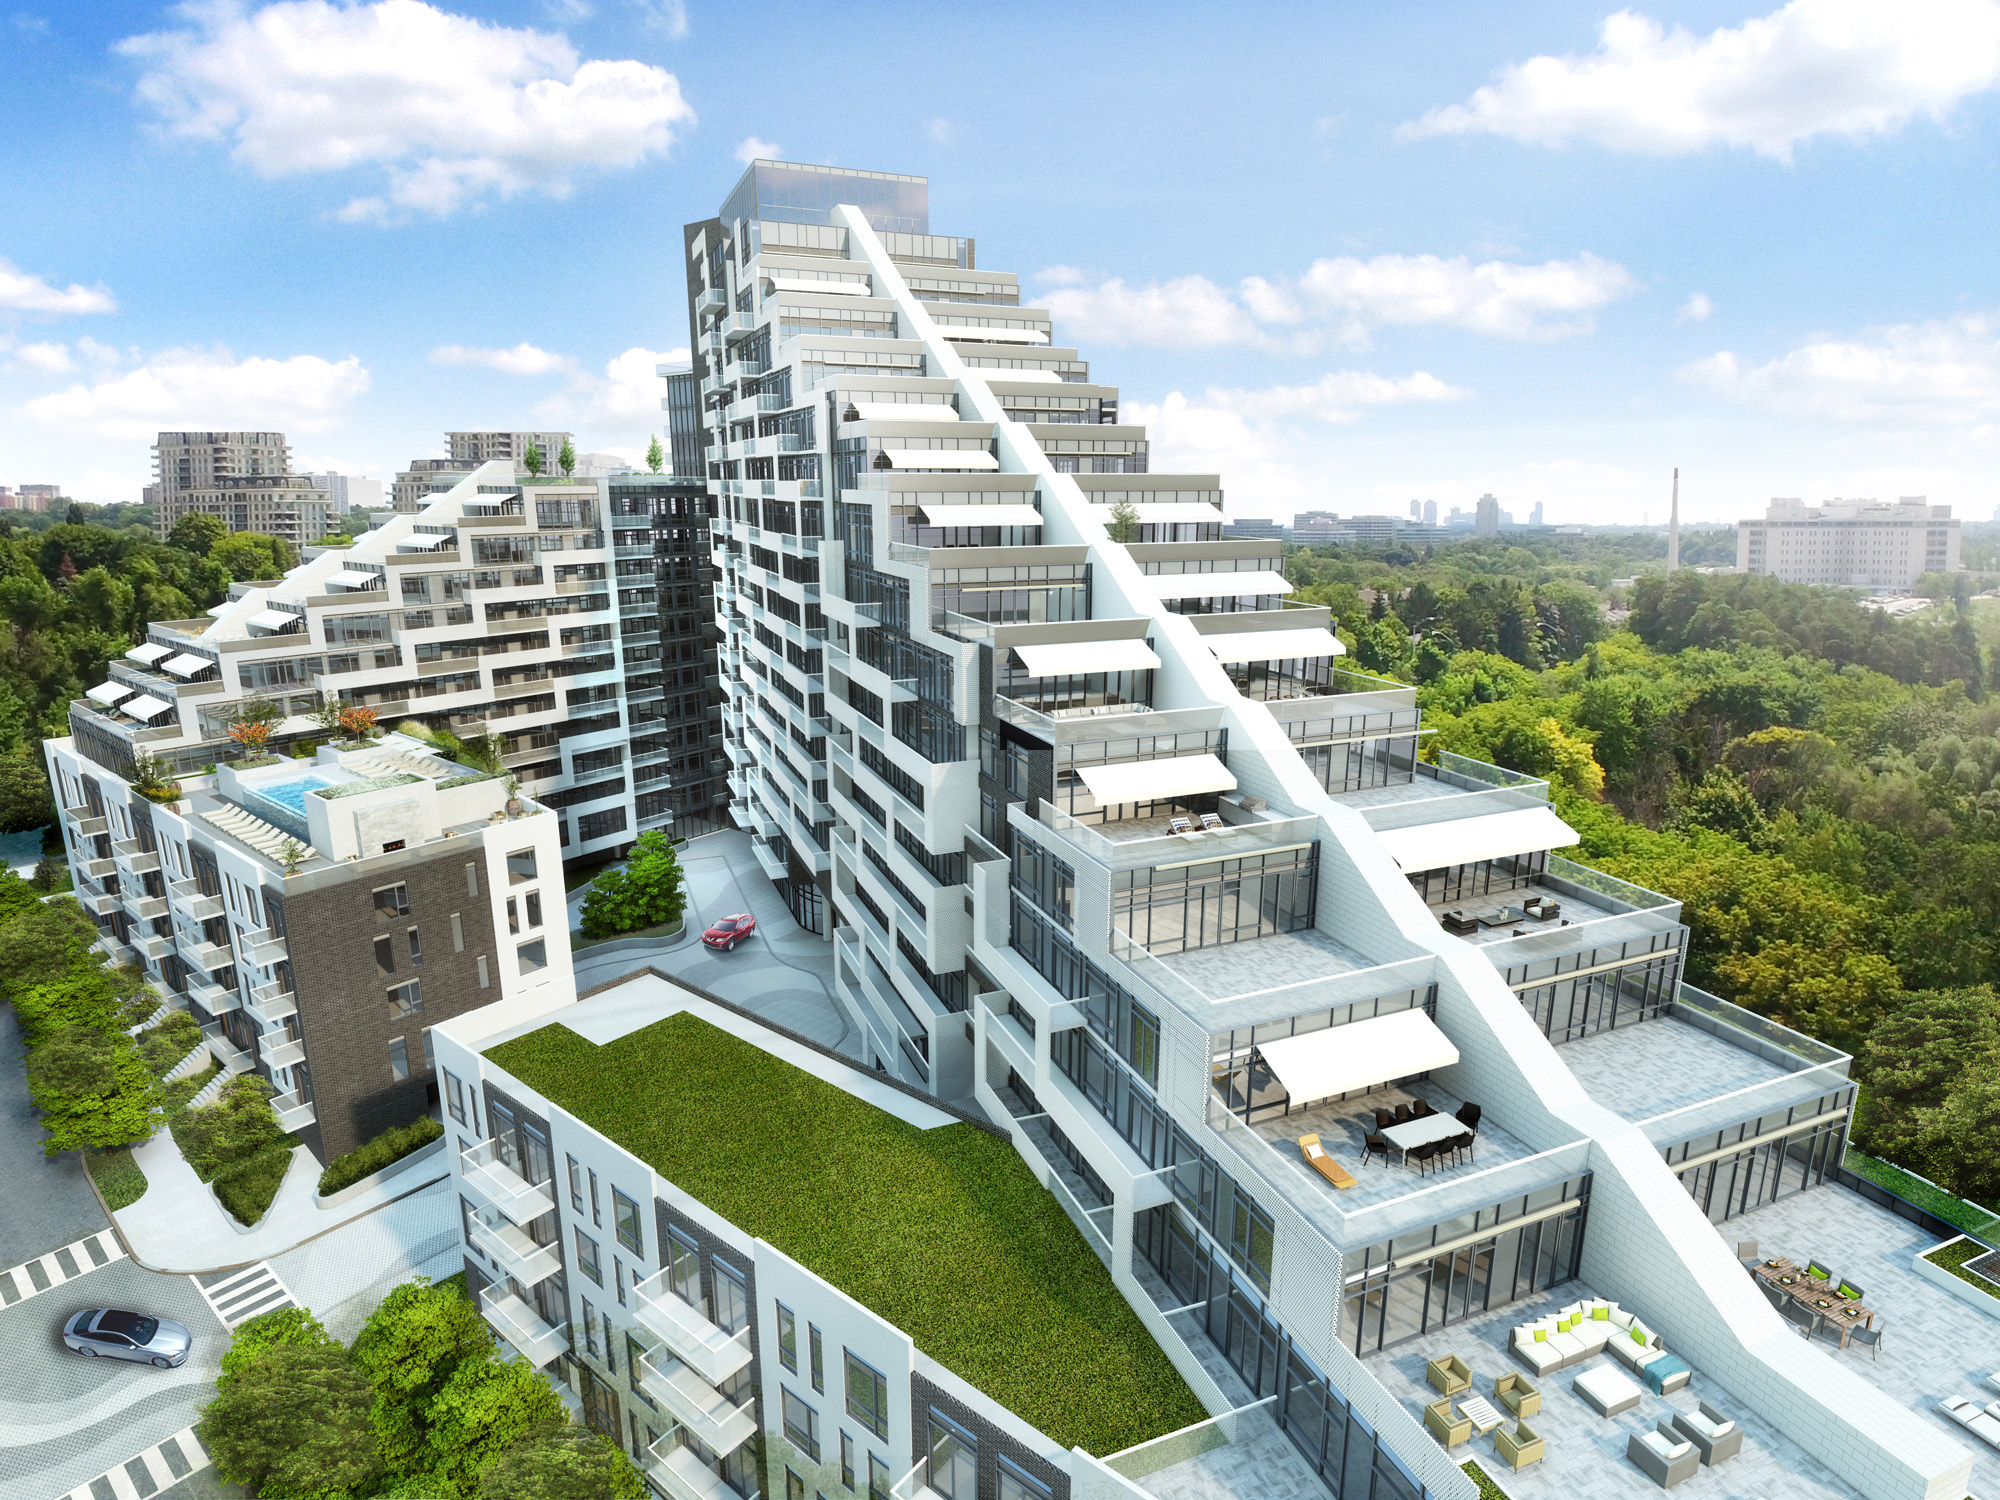 Exterior Rendering - Condo - Scala Condos Tridel Toronto Architectural 3D Rendering | Aareas Interactive